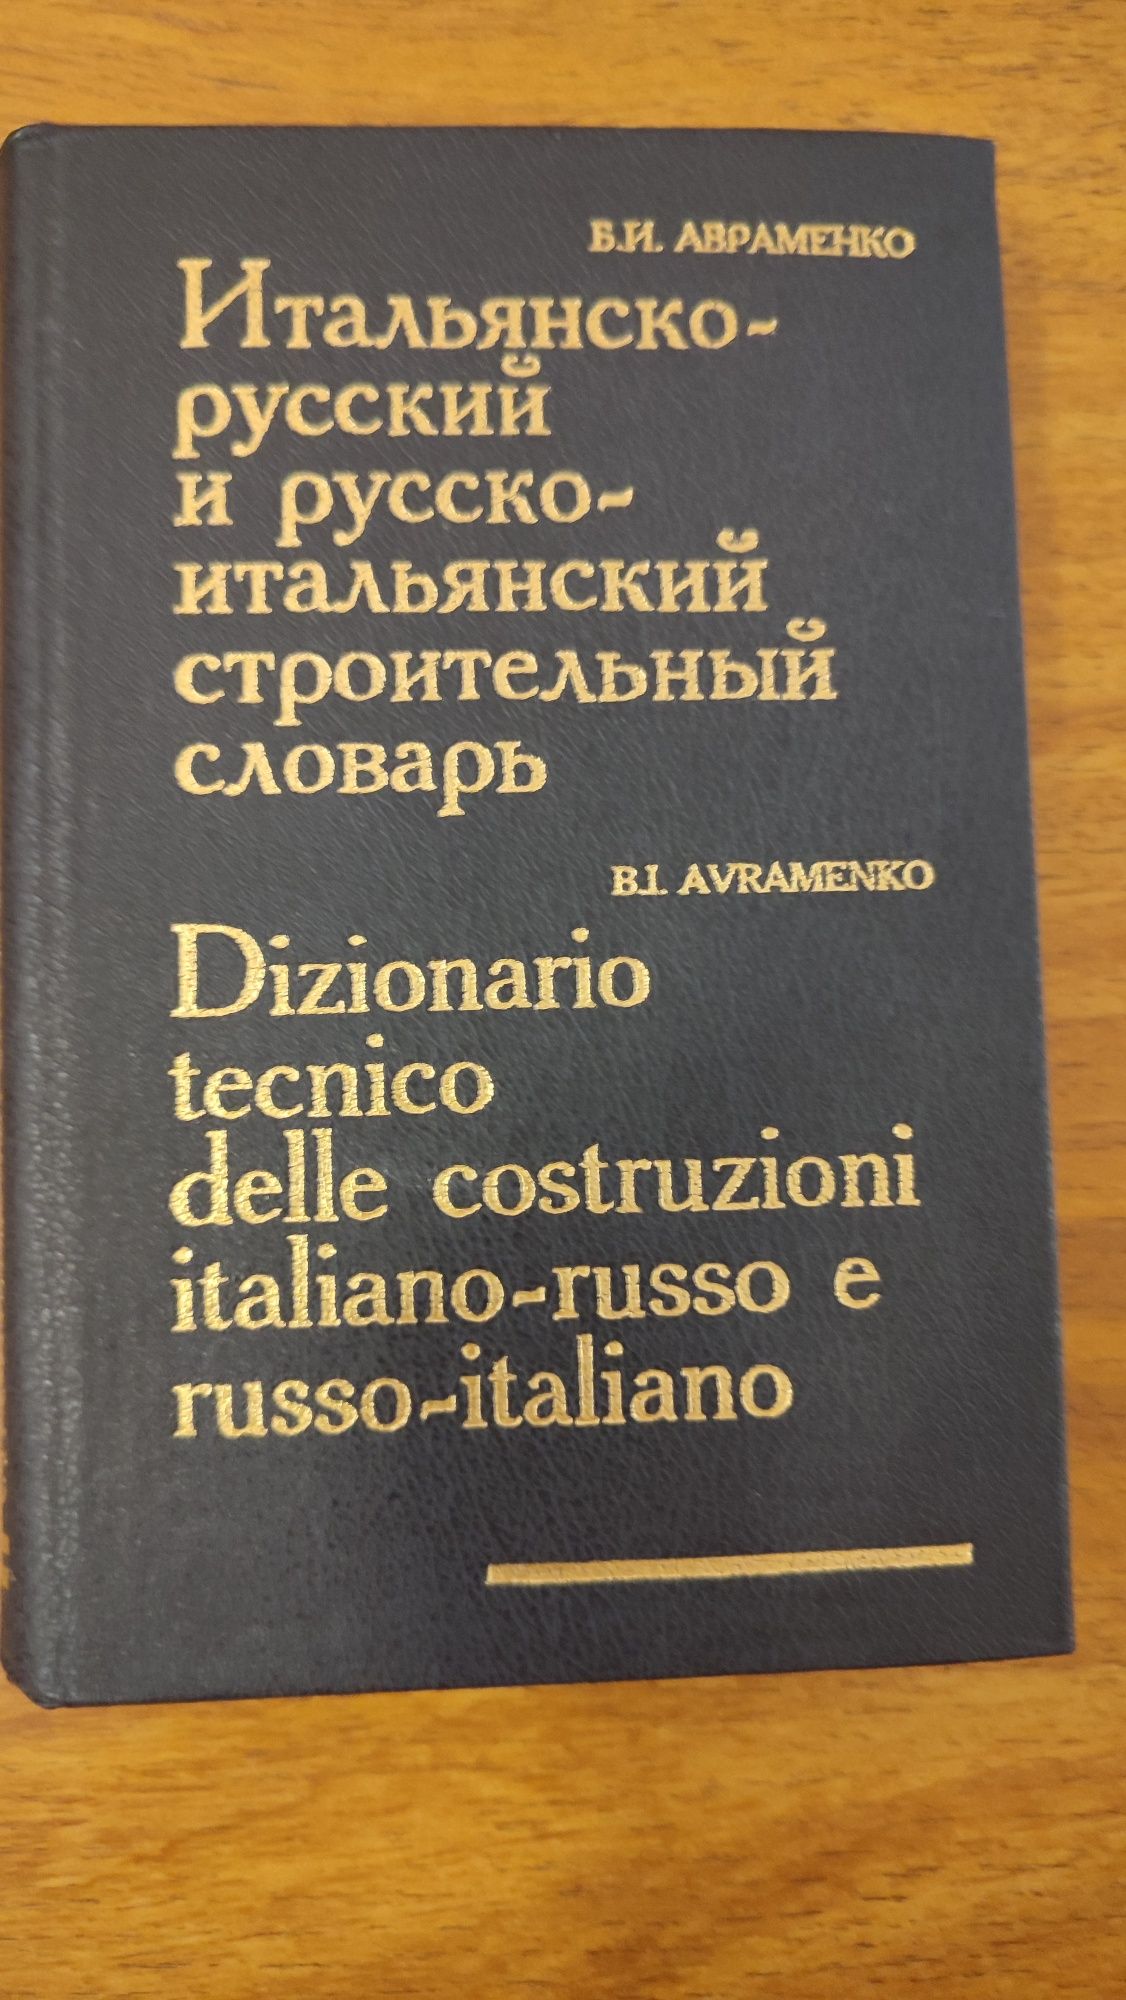 Итальянско-русский строительный словарь  Б.И Авраменко 1994